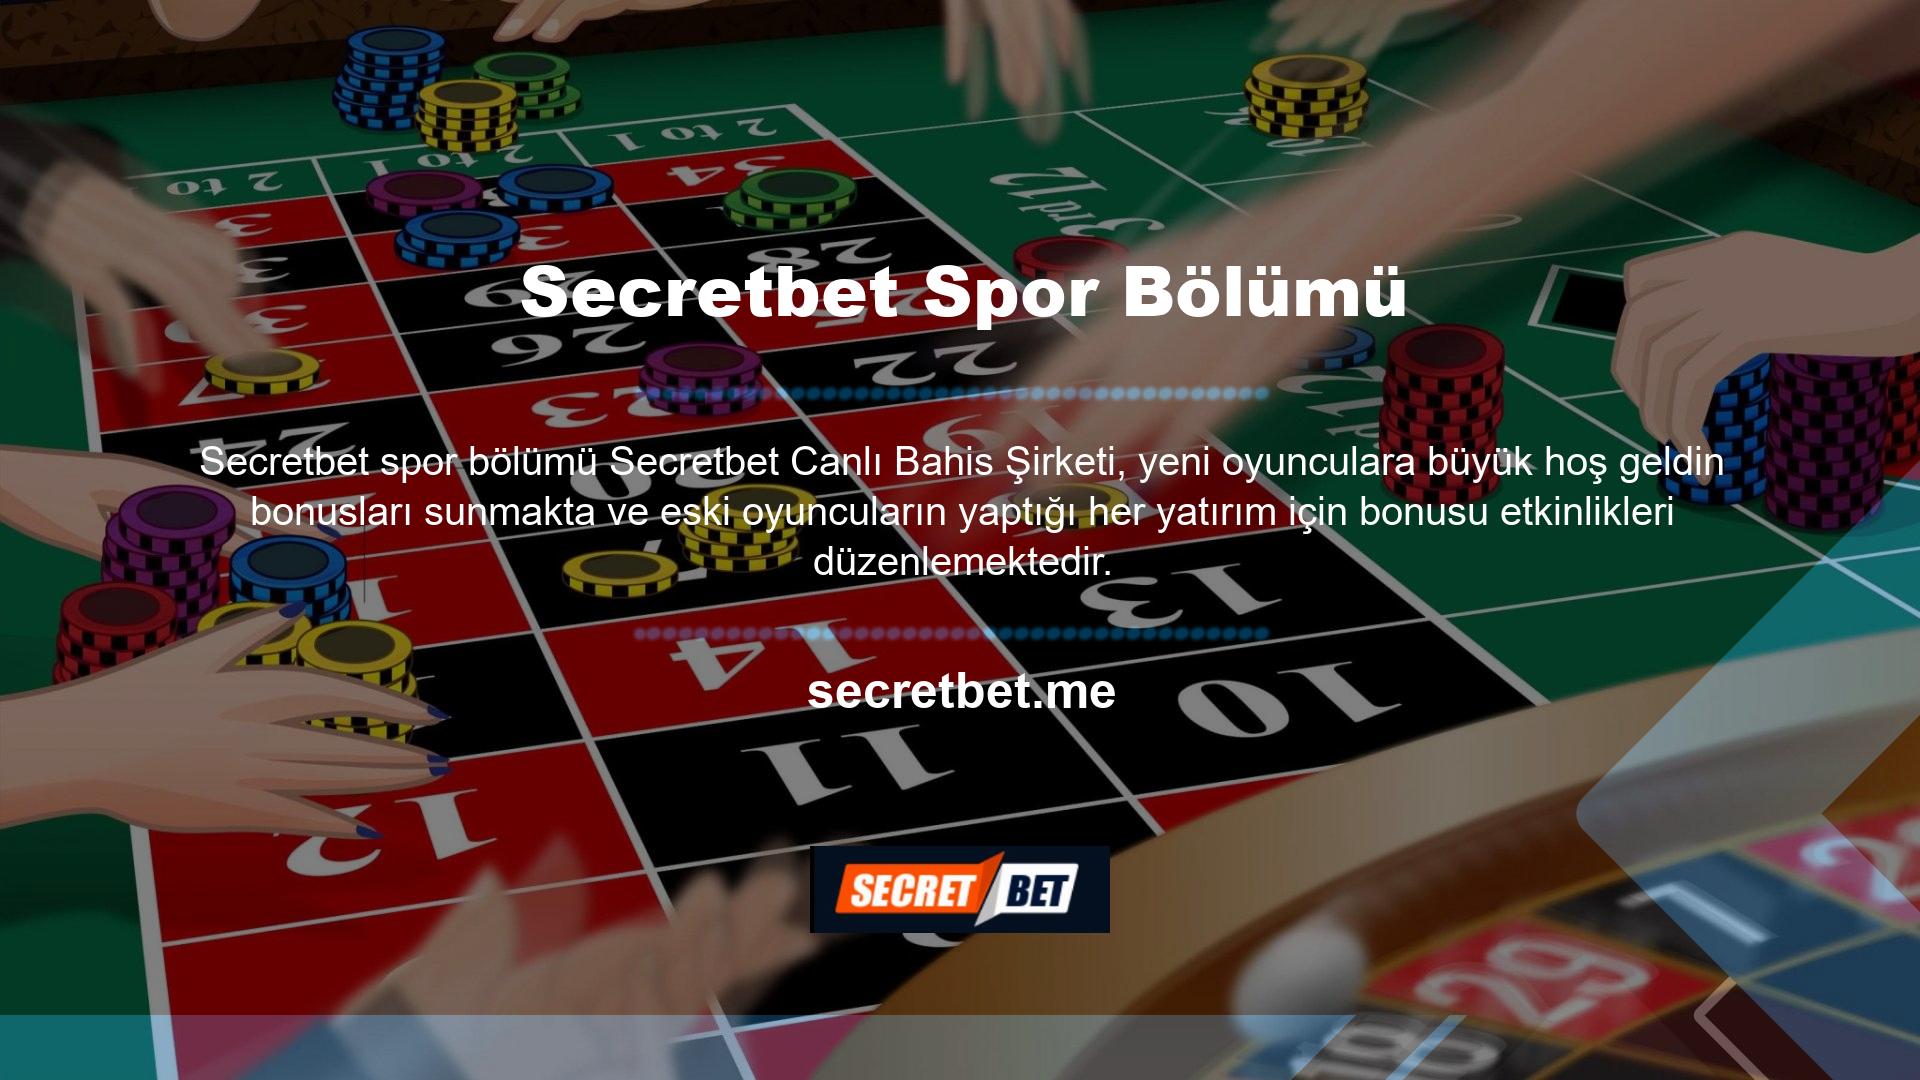 Secretbet TV ve Spor Bölümü Secretbet TV'de yayınlanan tüm maçları izleyebilirsiniz